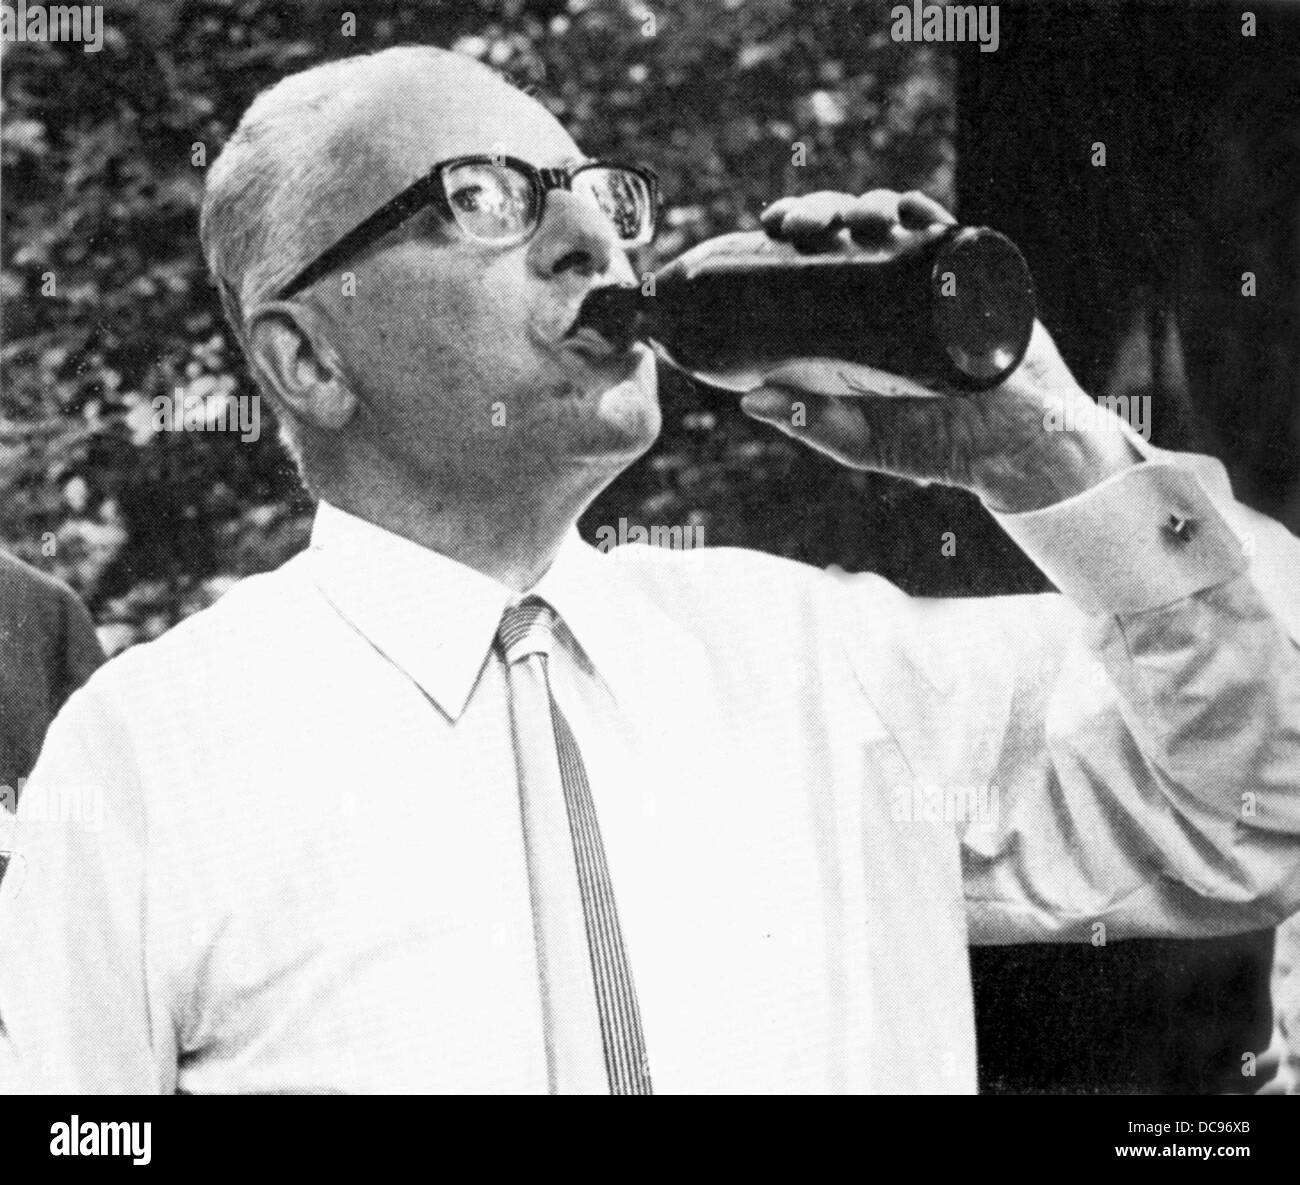 Gustav Heinemann nimmt einen tiefen vom Fass aus der Flasche (undatiertes Bild). Heinemann, Bundespräsident von 1969 bis 1974, wurde am 23. Juli 1899 geboren und starb am 7. Juli 1976. Stockfoto